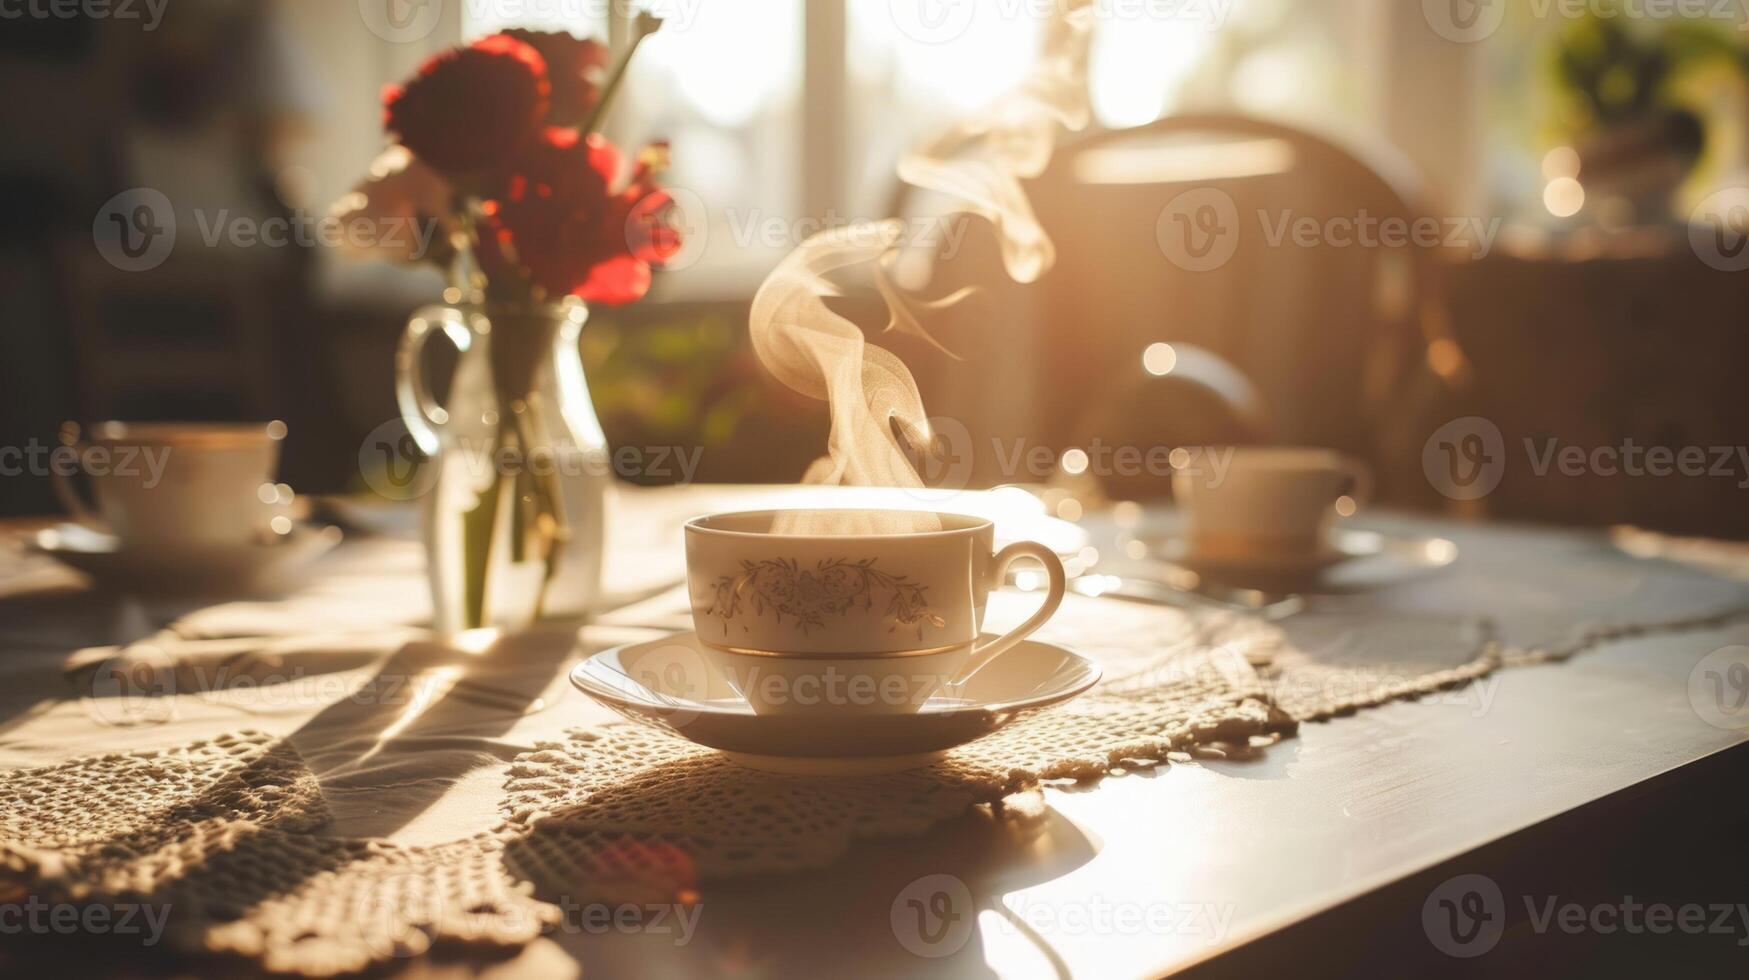 dämpfen Tasse von Tee auf ein Spitze Tischdecke mit Morgen Sonnenlicht. gemütlich Frühstück und Zuhause Komfort Konzept. immer noch Leben Foto zum Design im Cafe Menüs, Poster, und Zuhause Dekor. warm Innere.